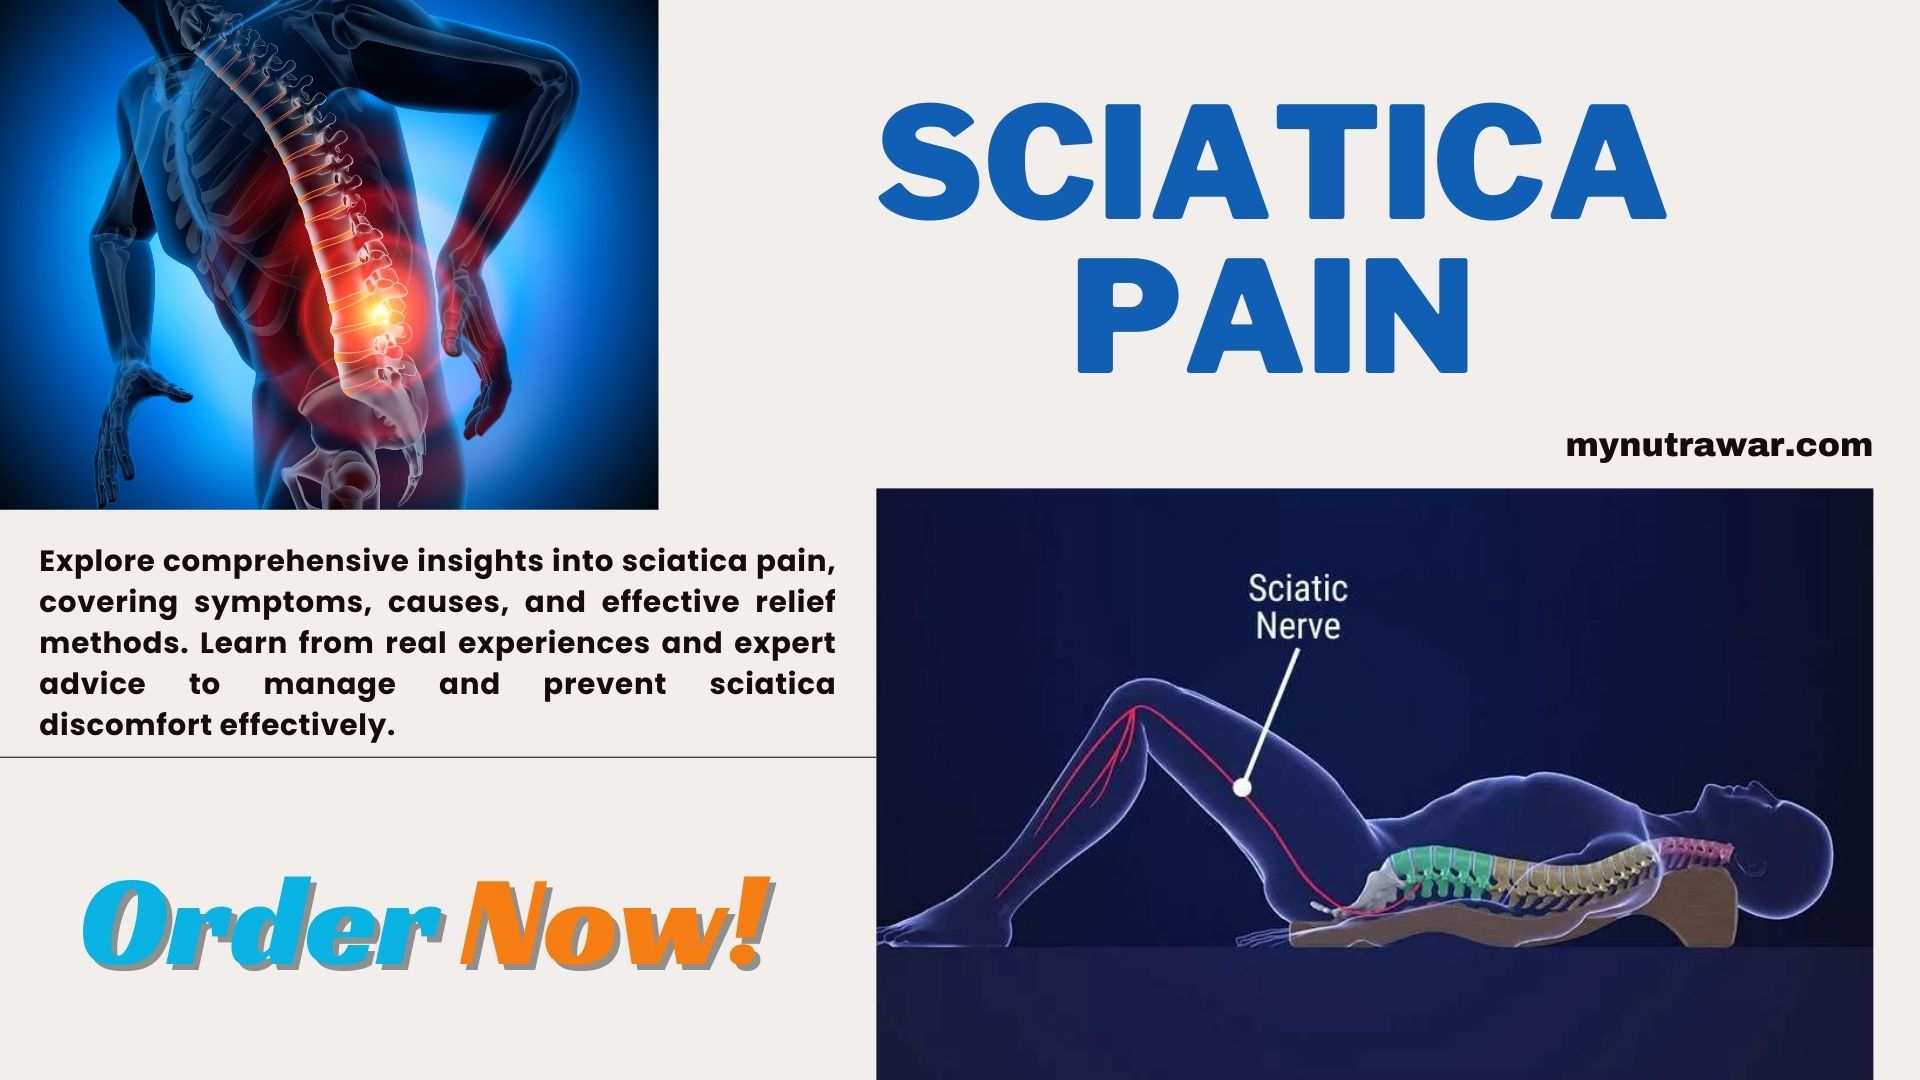 Sciatica pain